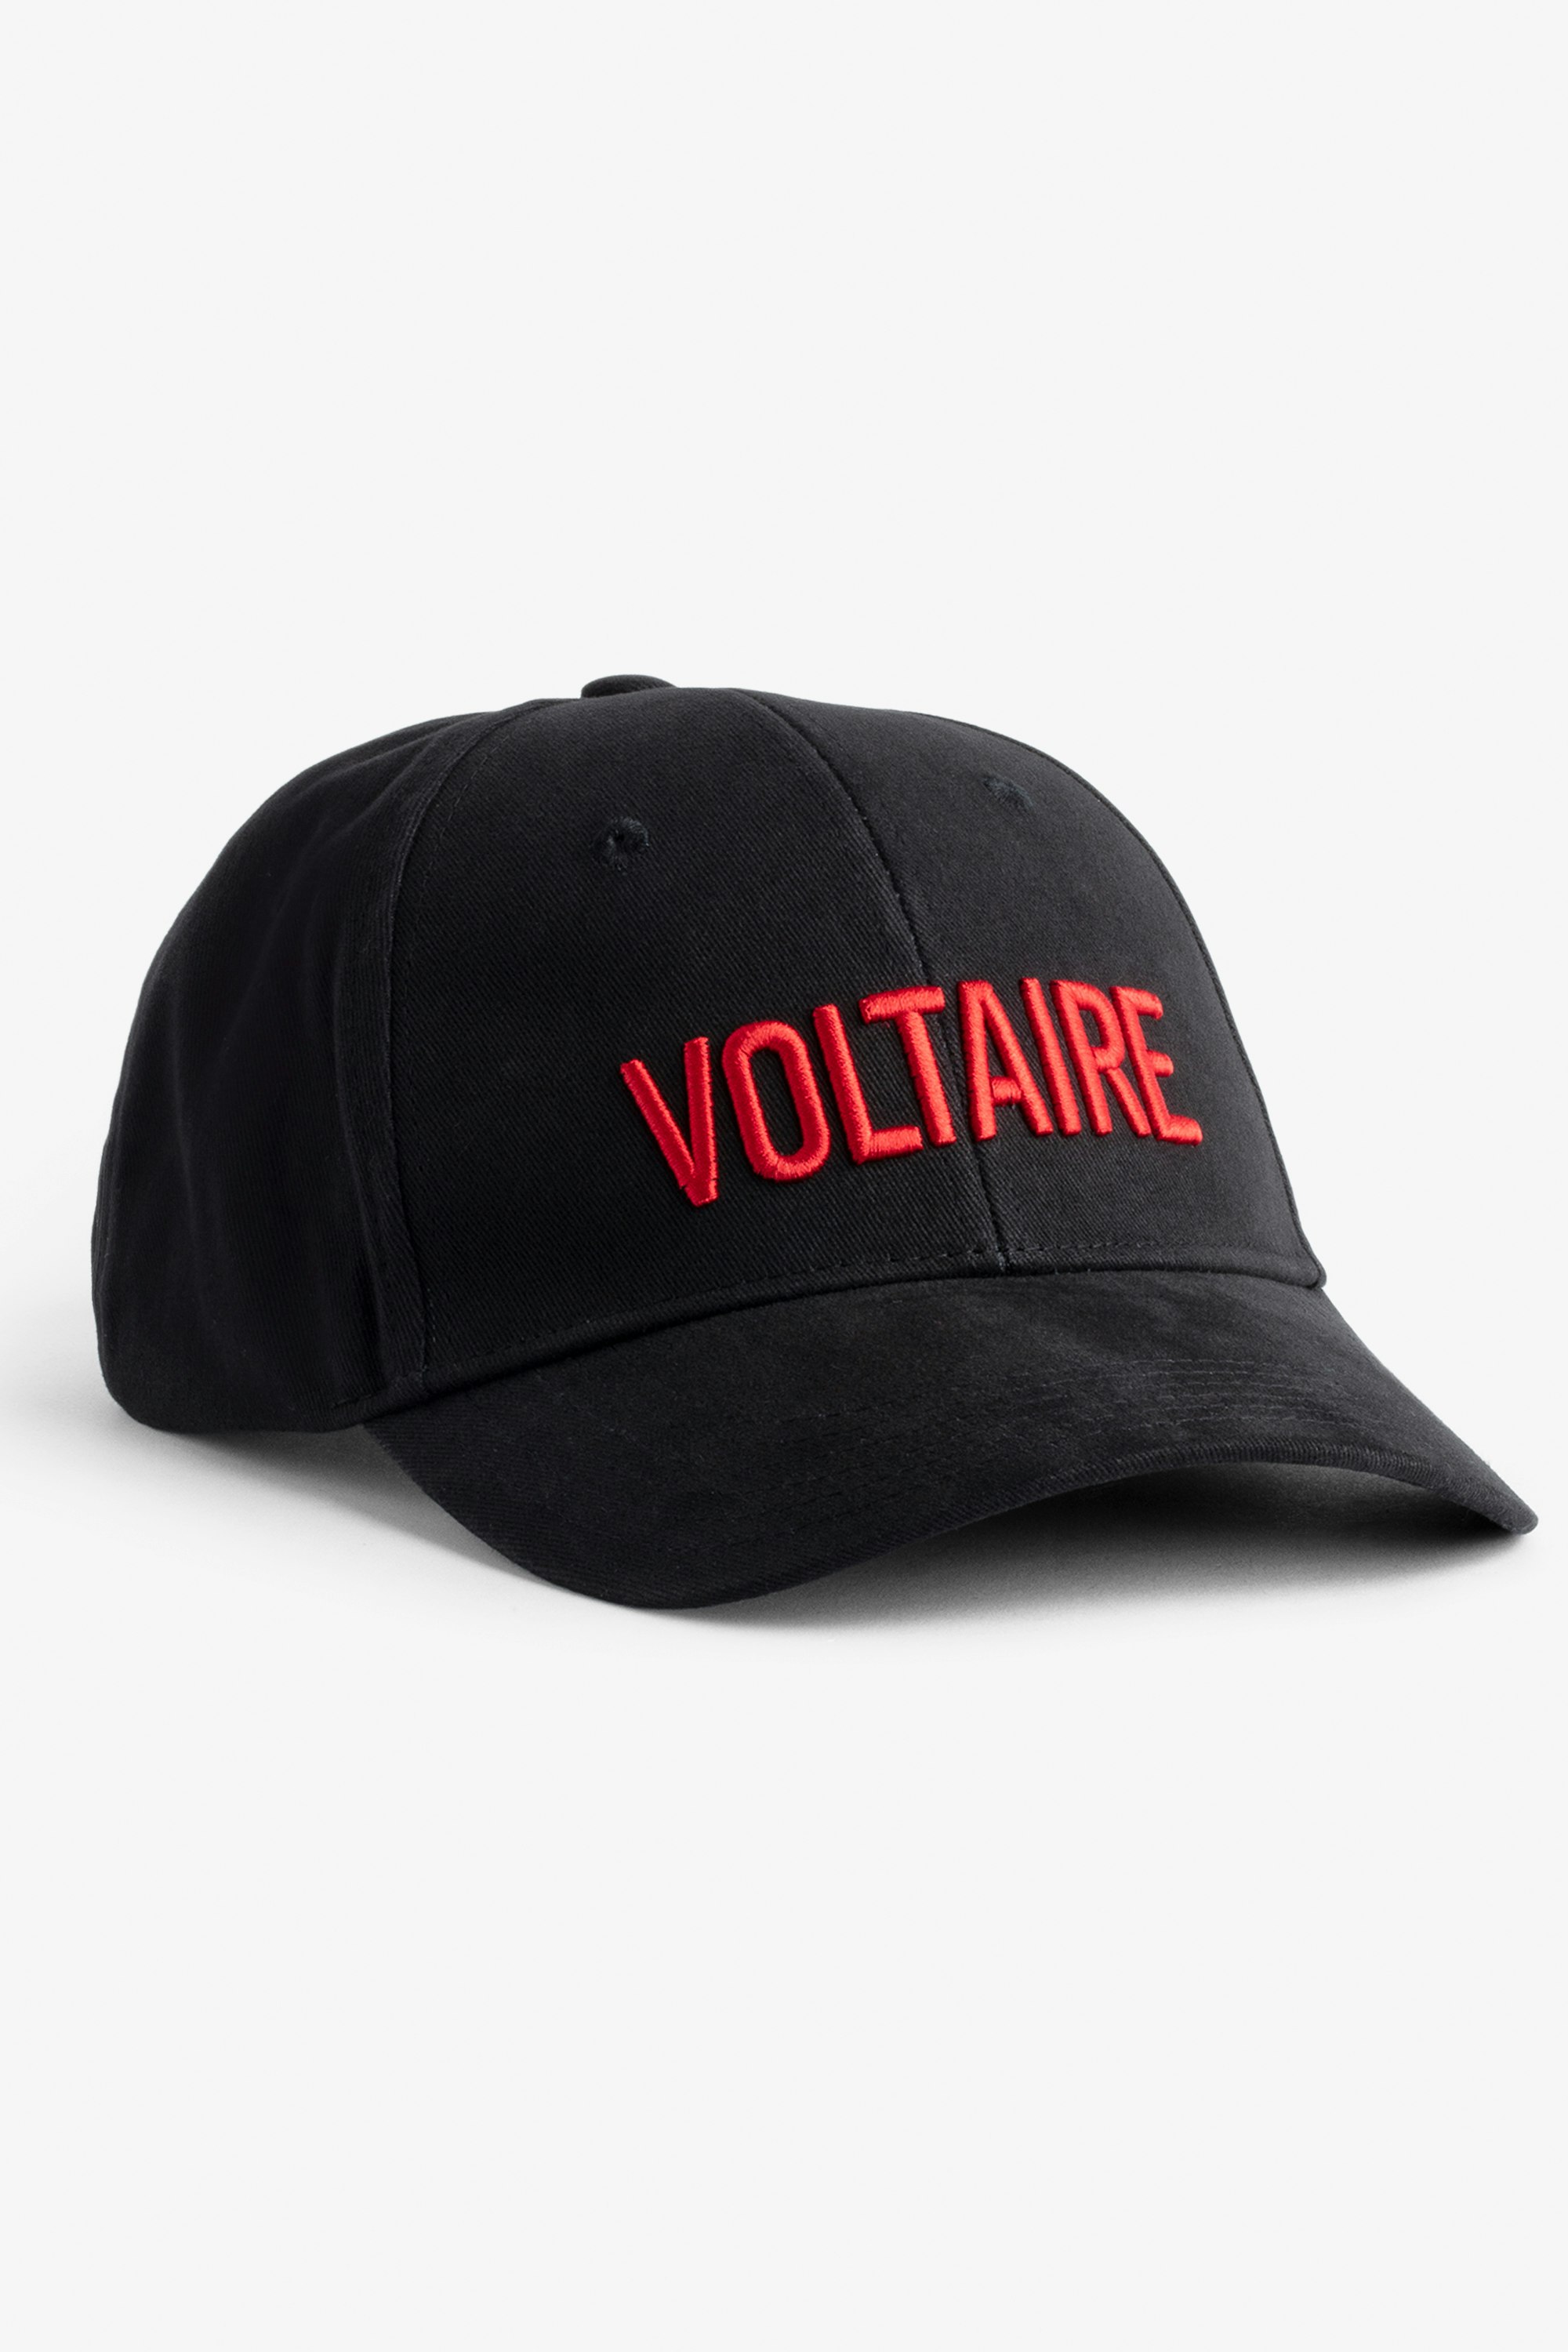 Klelia Voltaire Cap Women's Voltaire embroidered black cotton cap